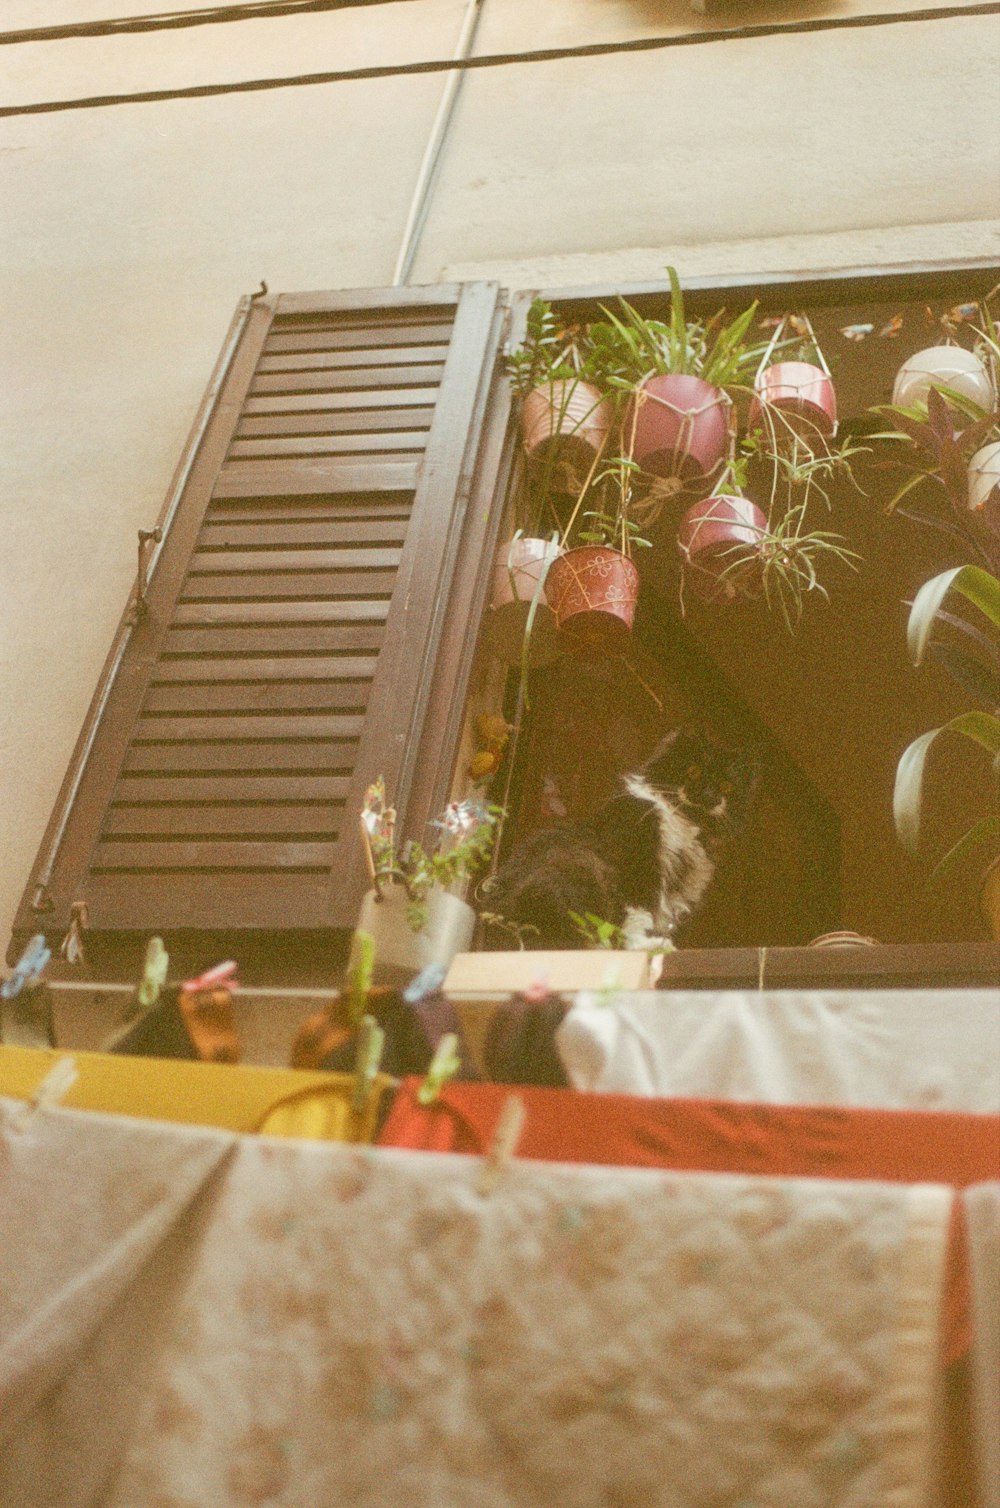 Un gatto seduto in un davanzale della finestra accanto a un mucchio di piante